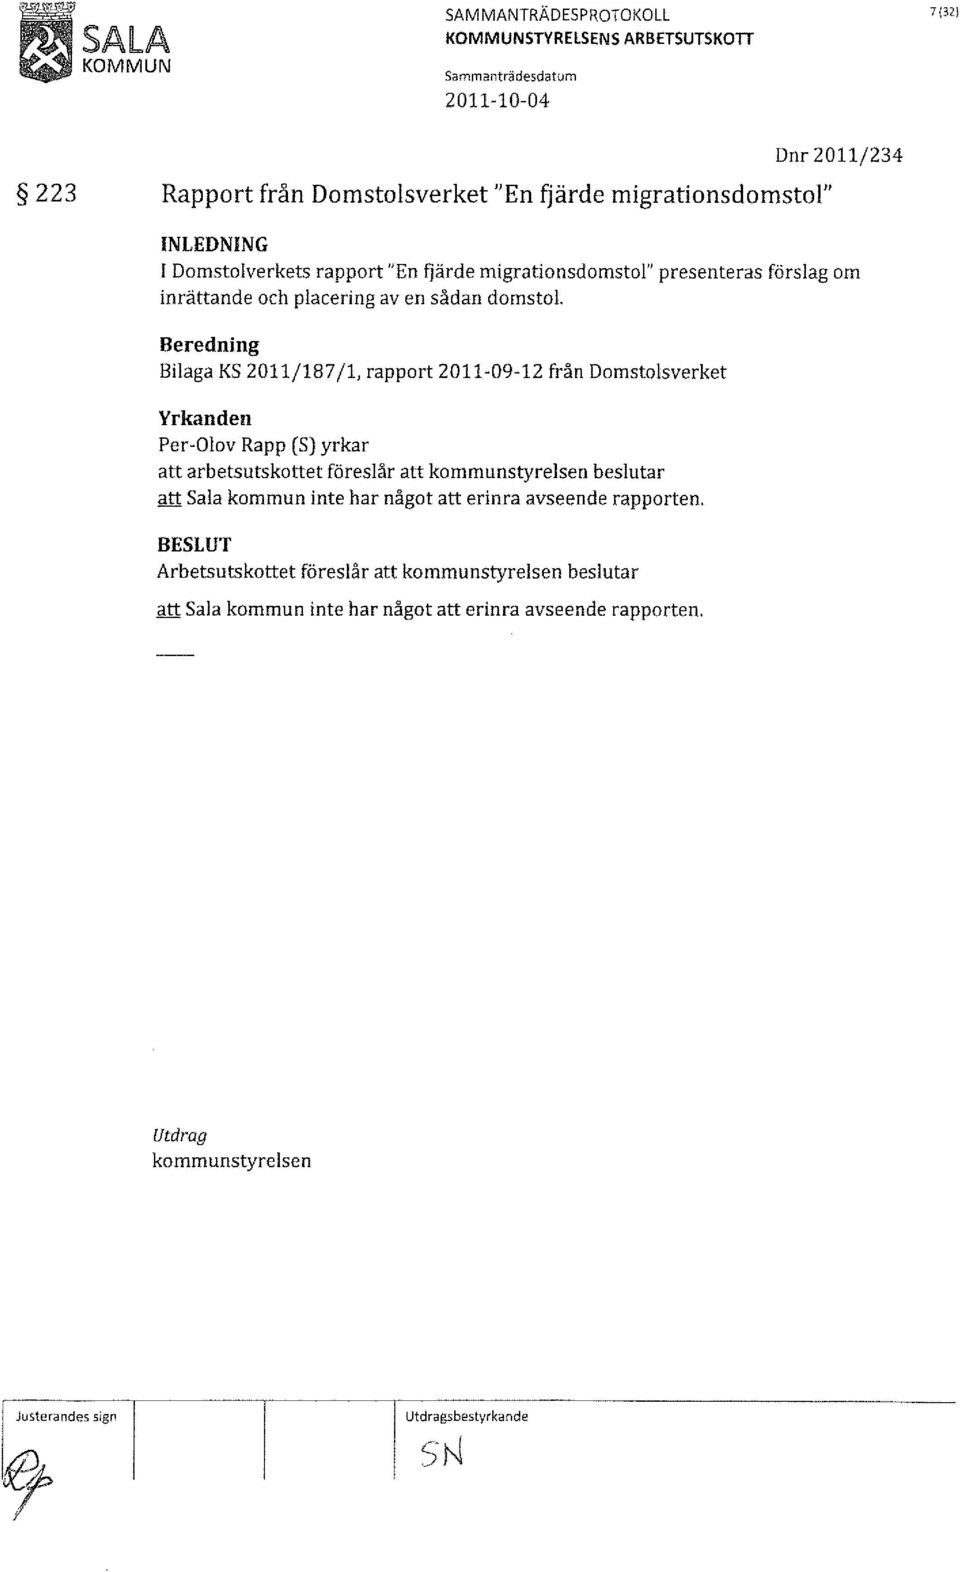 Beredning Bilaga KS 2011/187/1, rapport från Domstolsverket Yrkanden Per-Olov Rapp (S) yrkar att arbetsutskottet föreslår att kommunstyrelsen beslutar att Sala kommun inte